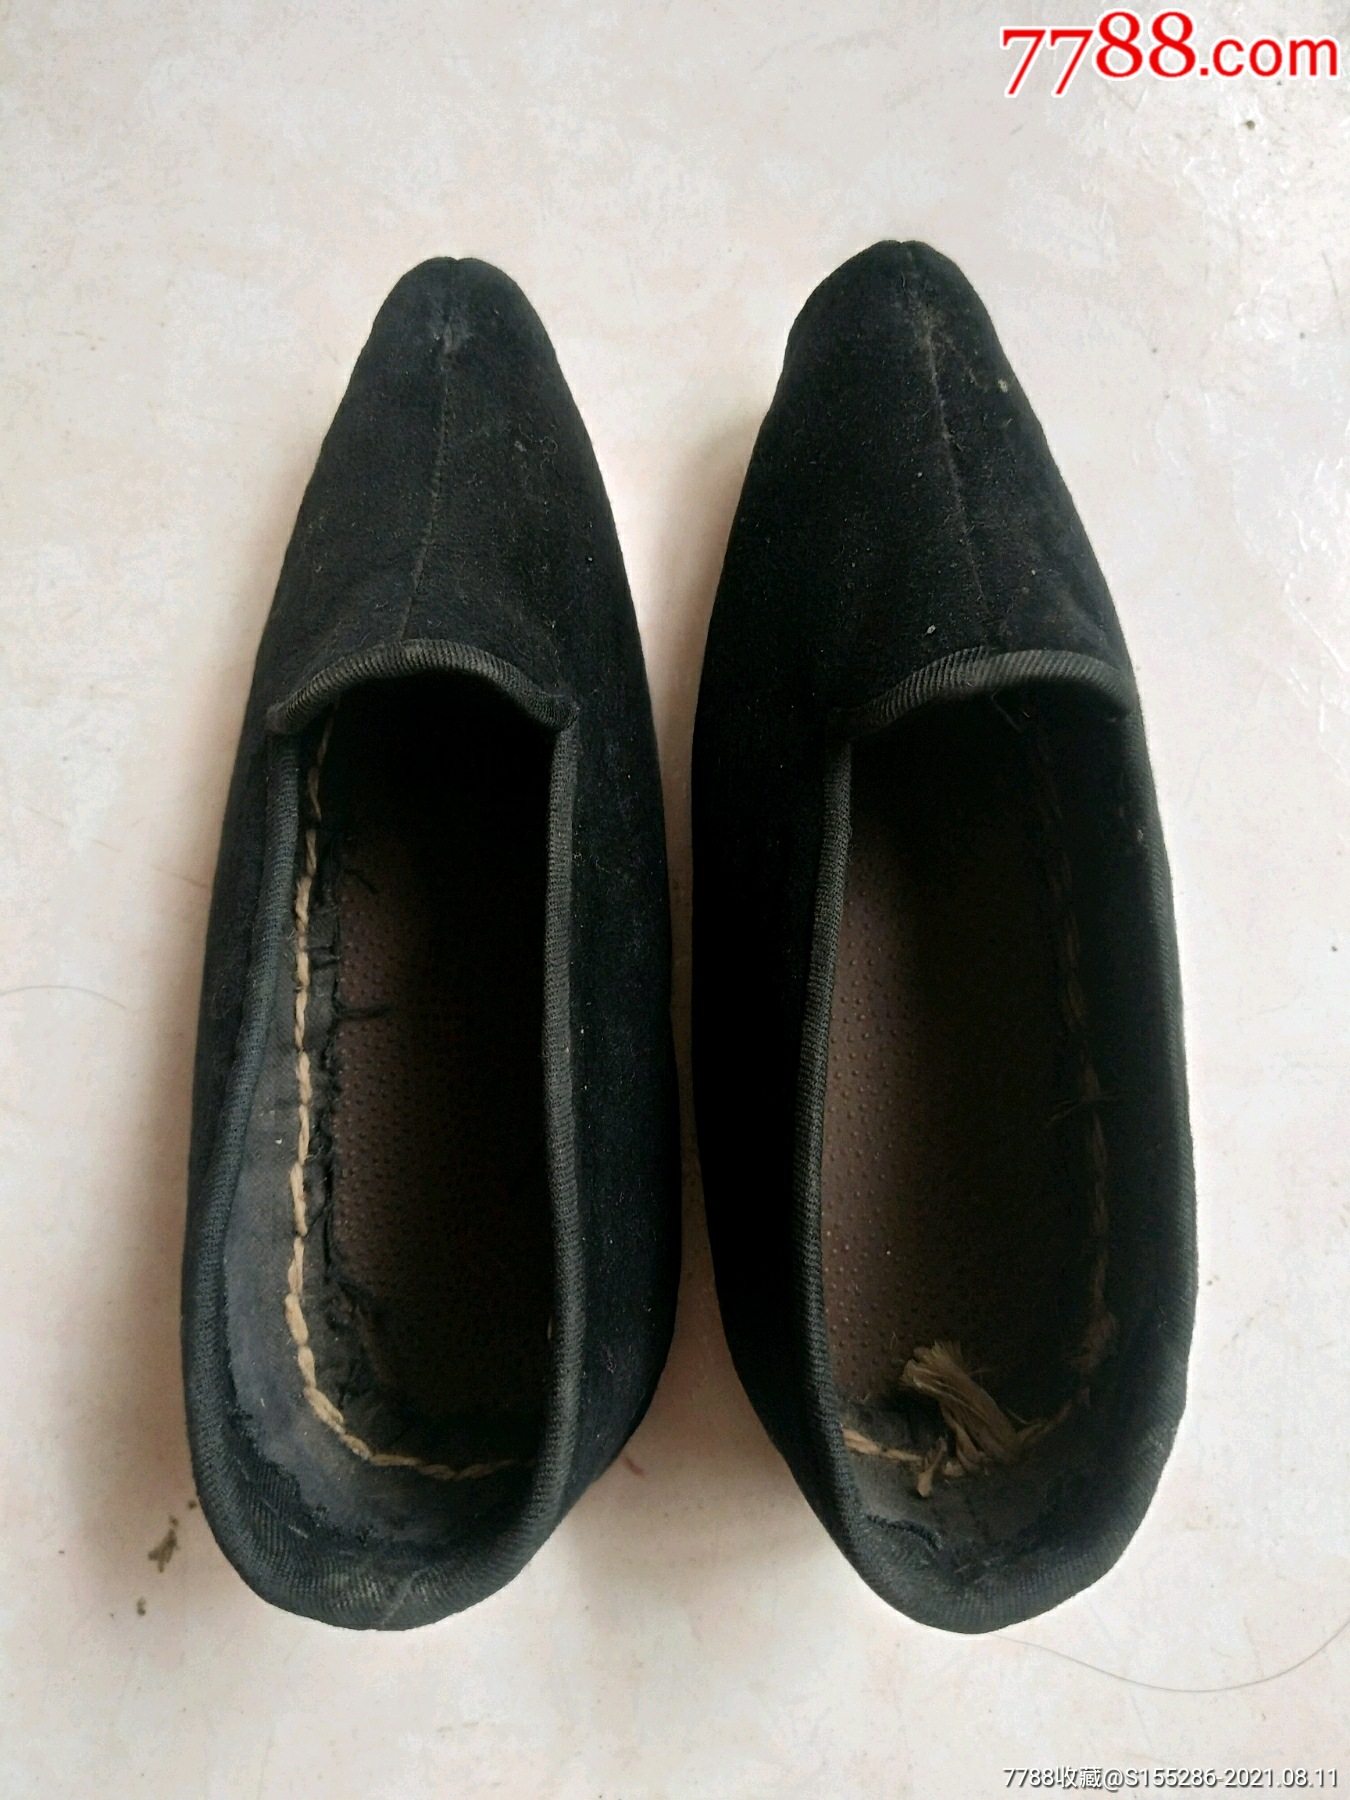 民俗老太太三寸金莲小脚鞋,长18厘米,全新未穿过,包老包真